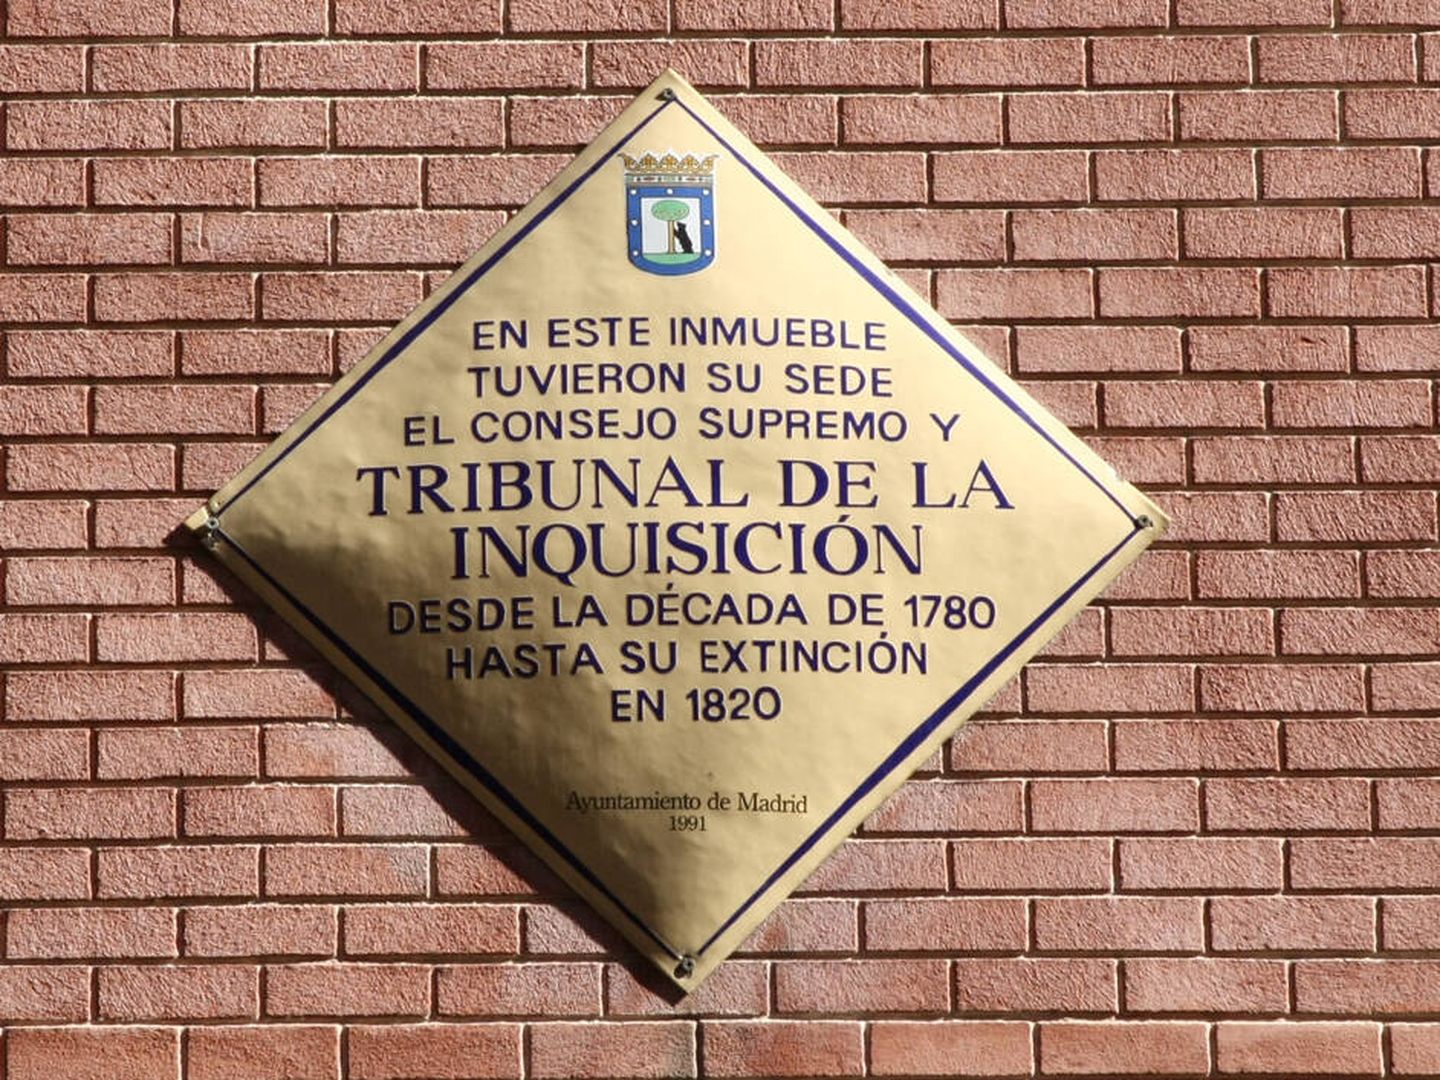 Placa del Tribunal de la Inquisición en la calle Torija. (Cedida)